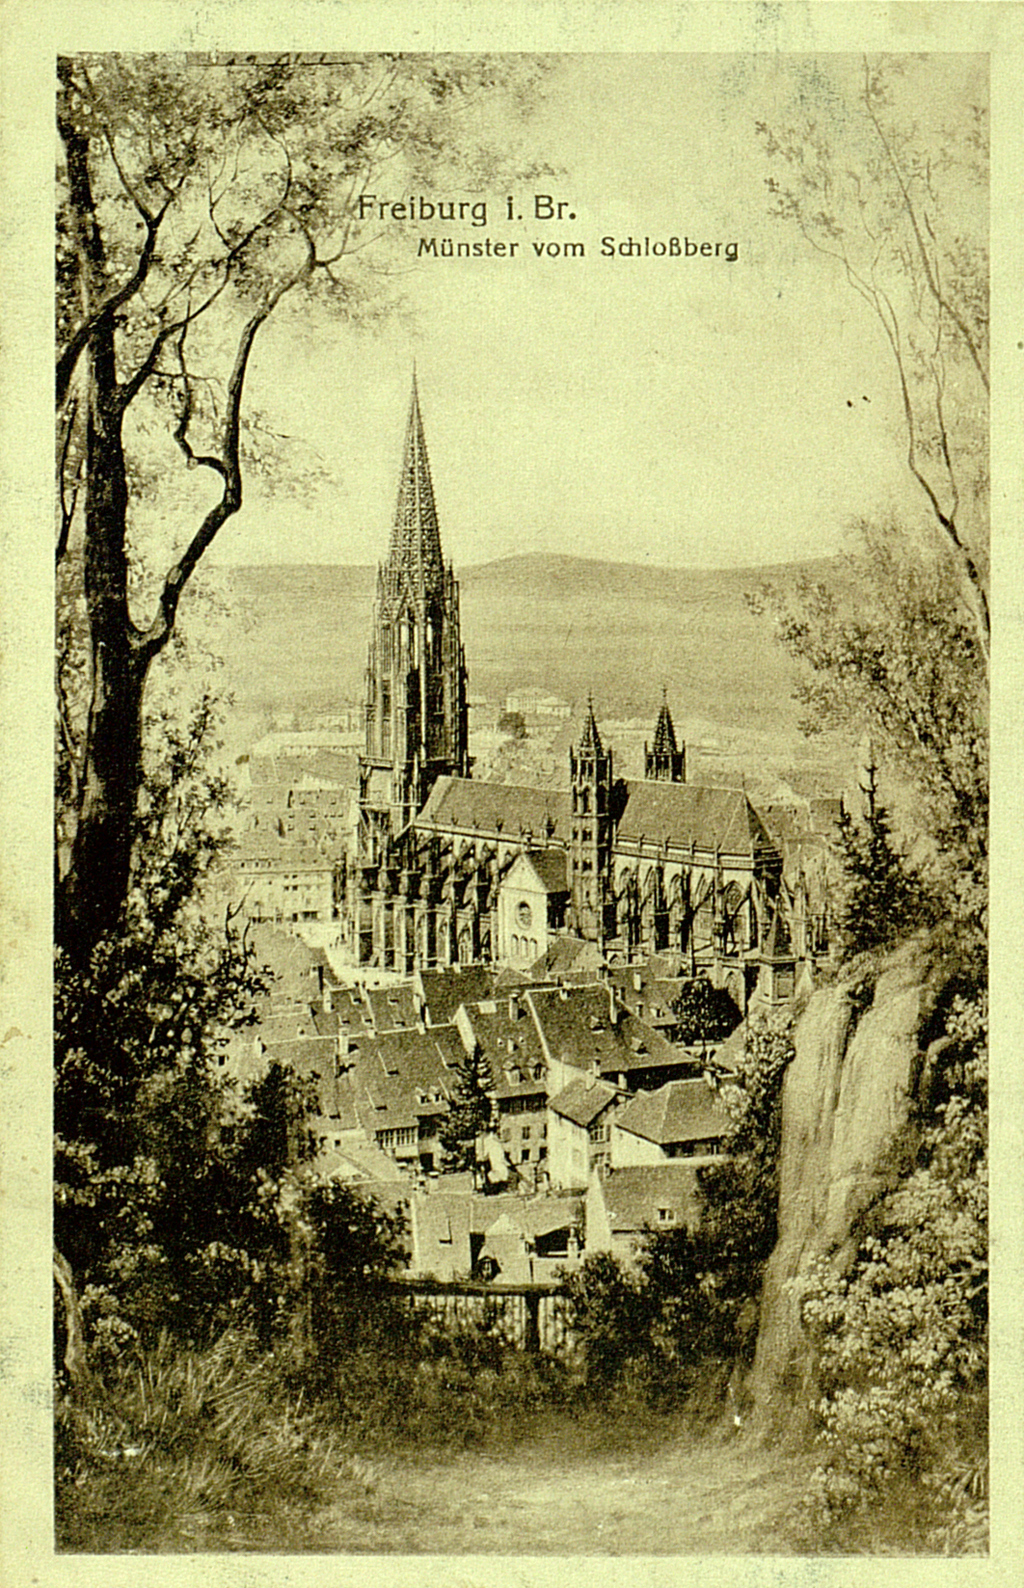 Die Abbildung zeigt eine 1918 gelaufene Postkarte. Zu sehen ist das Freiburger Münster. Als Standpunkt für die Fotografie wurde der Schlossberg gewählt, demzufolge nur die Süd- und Ostseite, wie auch Teilbereiche des Turms zu erkennen sind. 